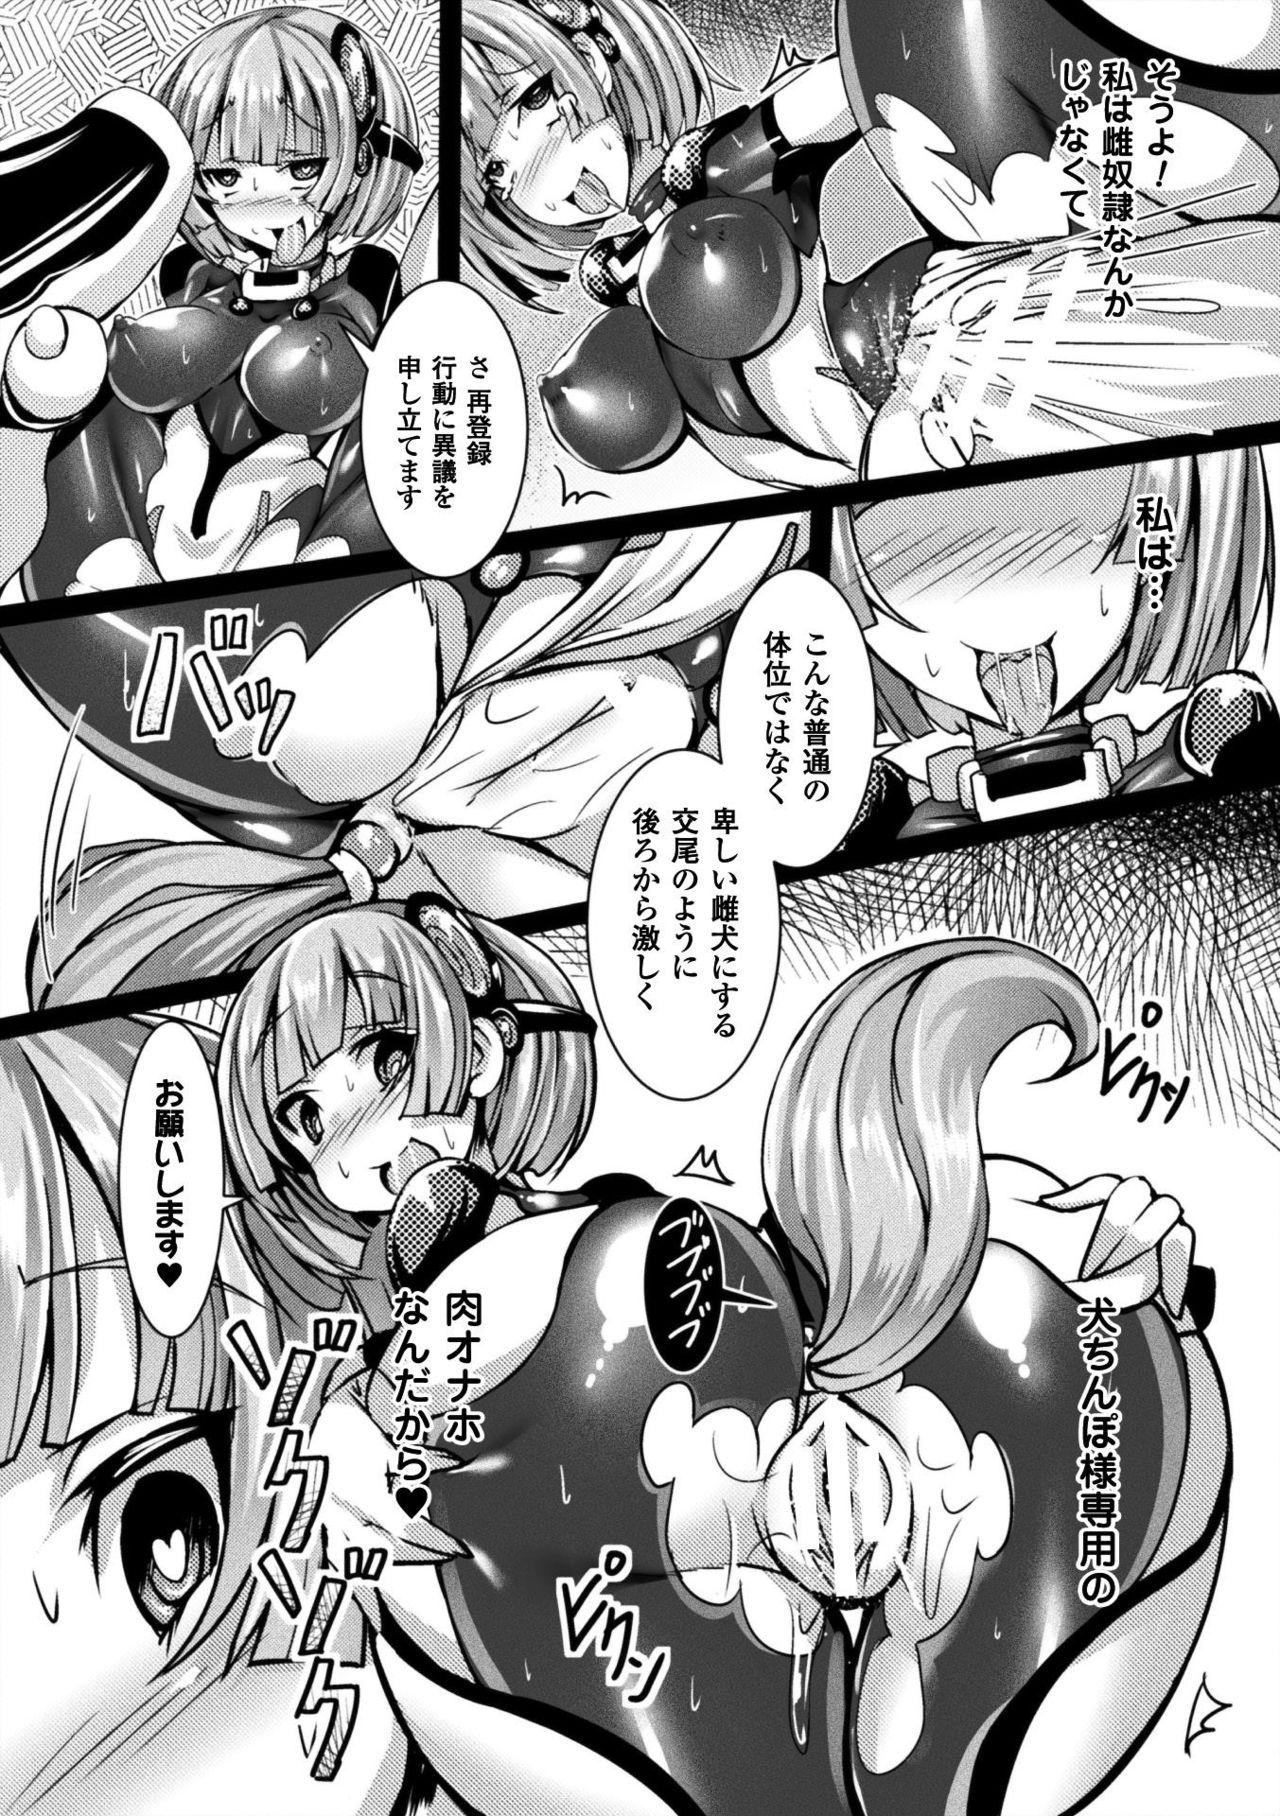 Seigi no Heroine Kangoku File Vol. 15 12